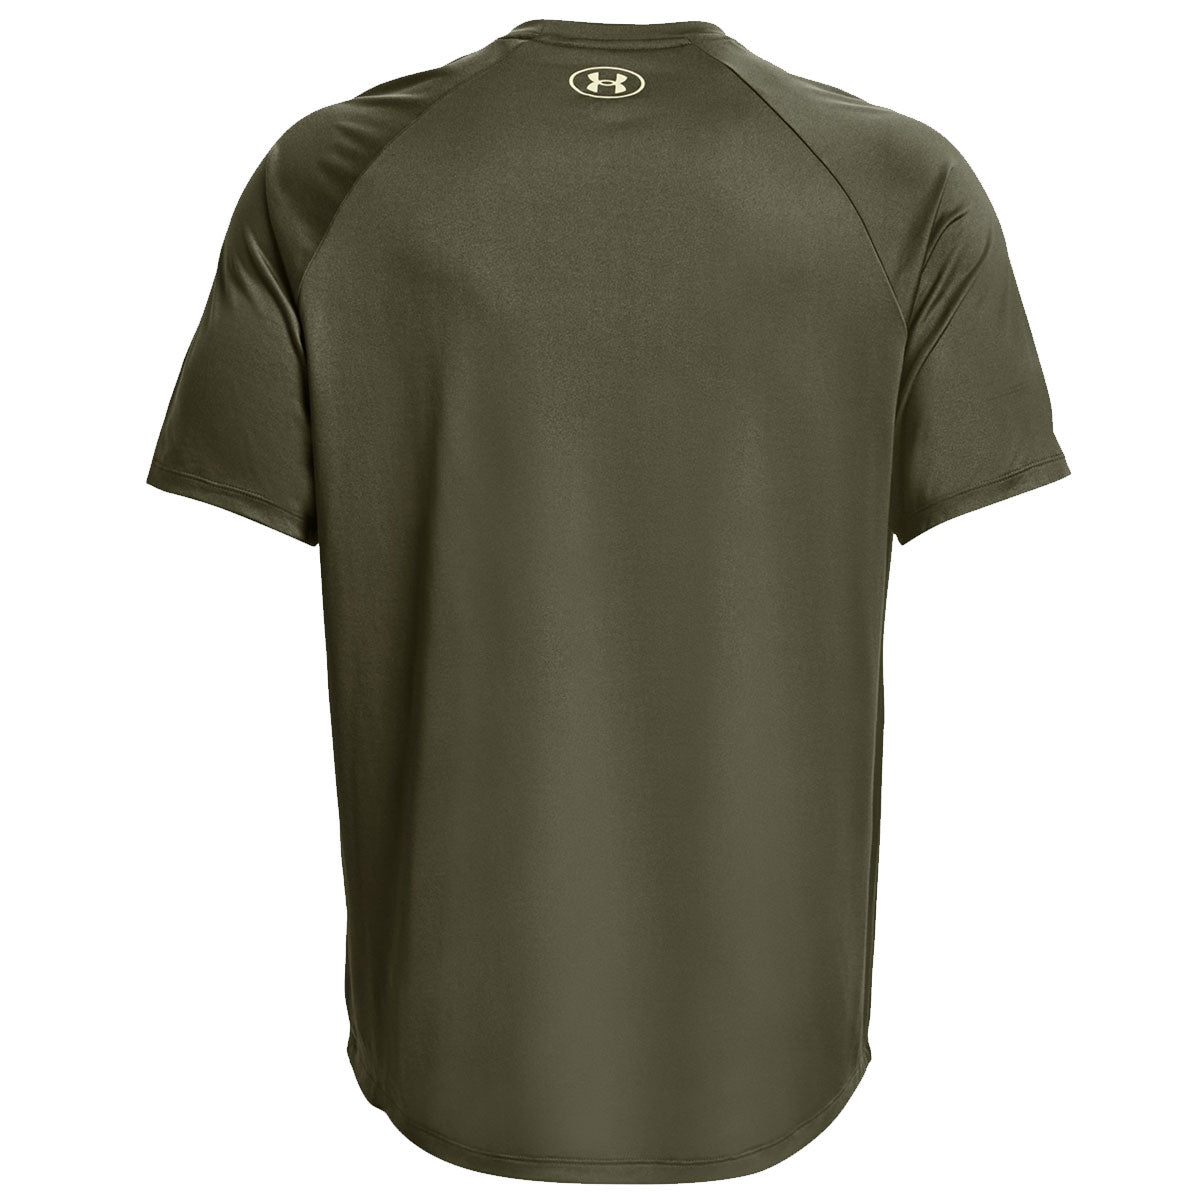 Under Armour Tech Print Fill Short Sleeve Tee - Mens - Marine Green/Speed Green